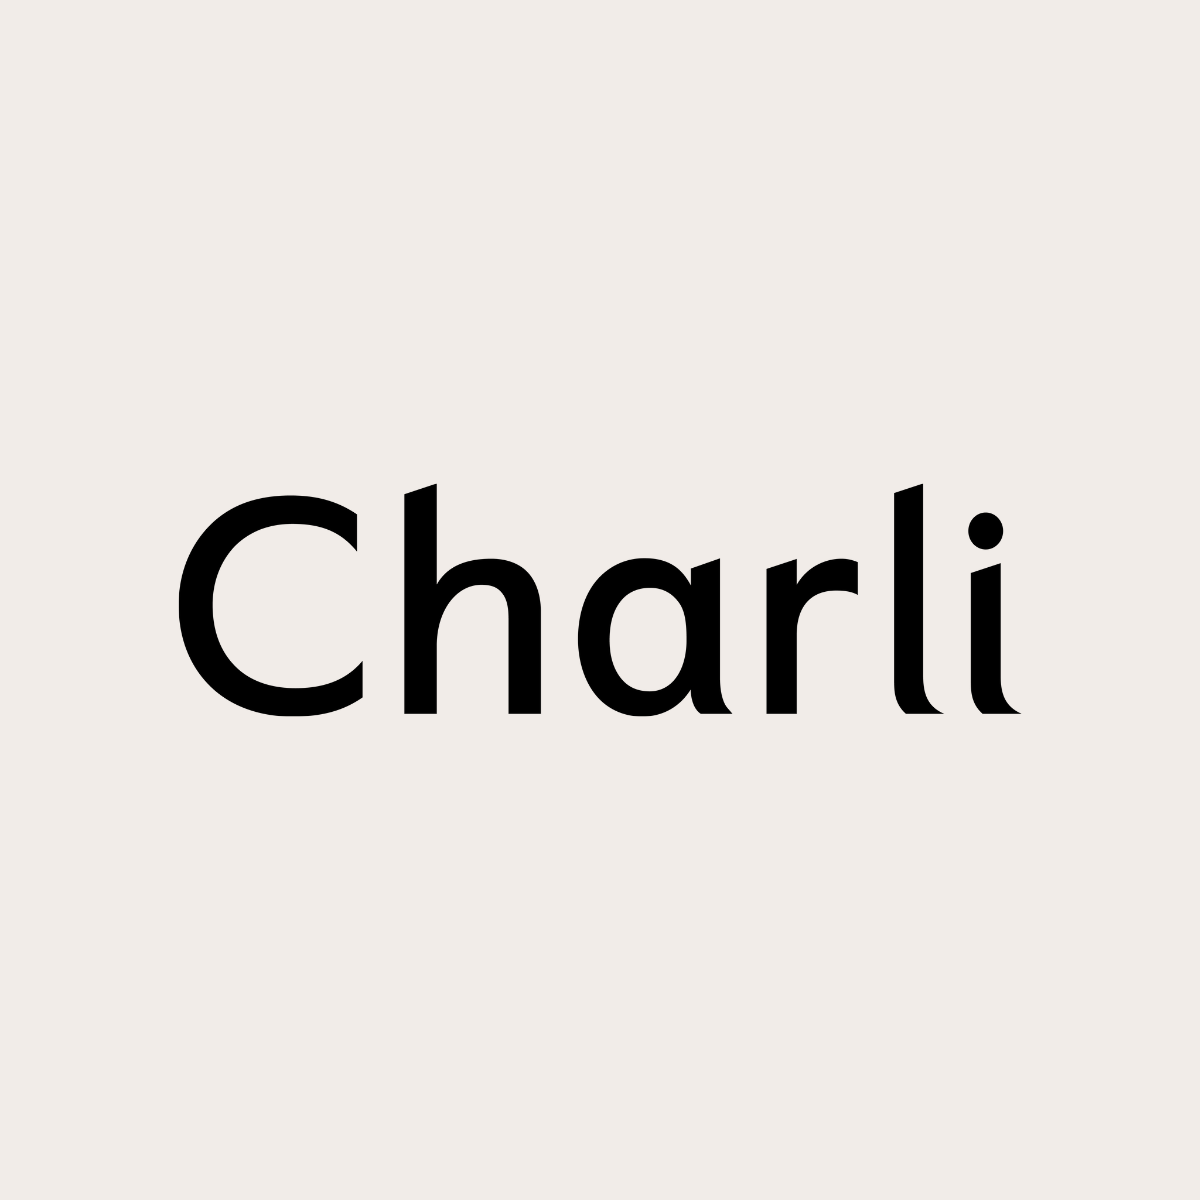 Charli London logo